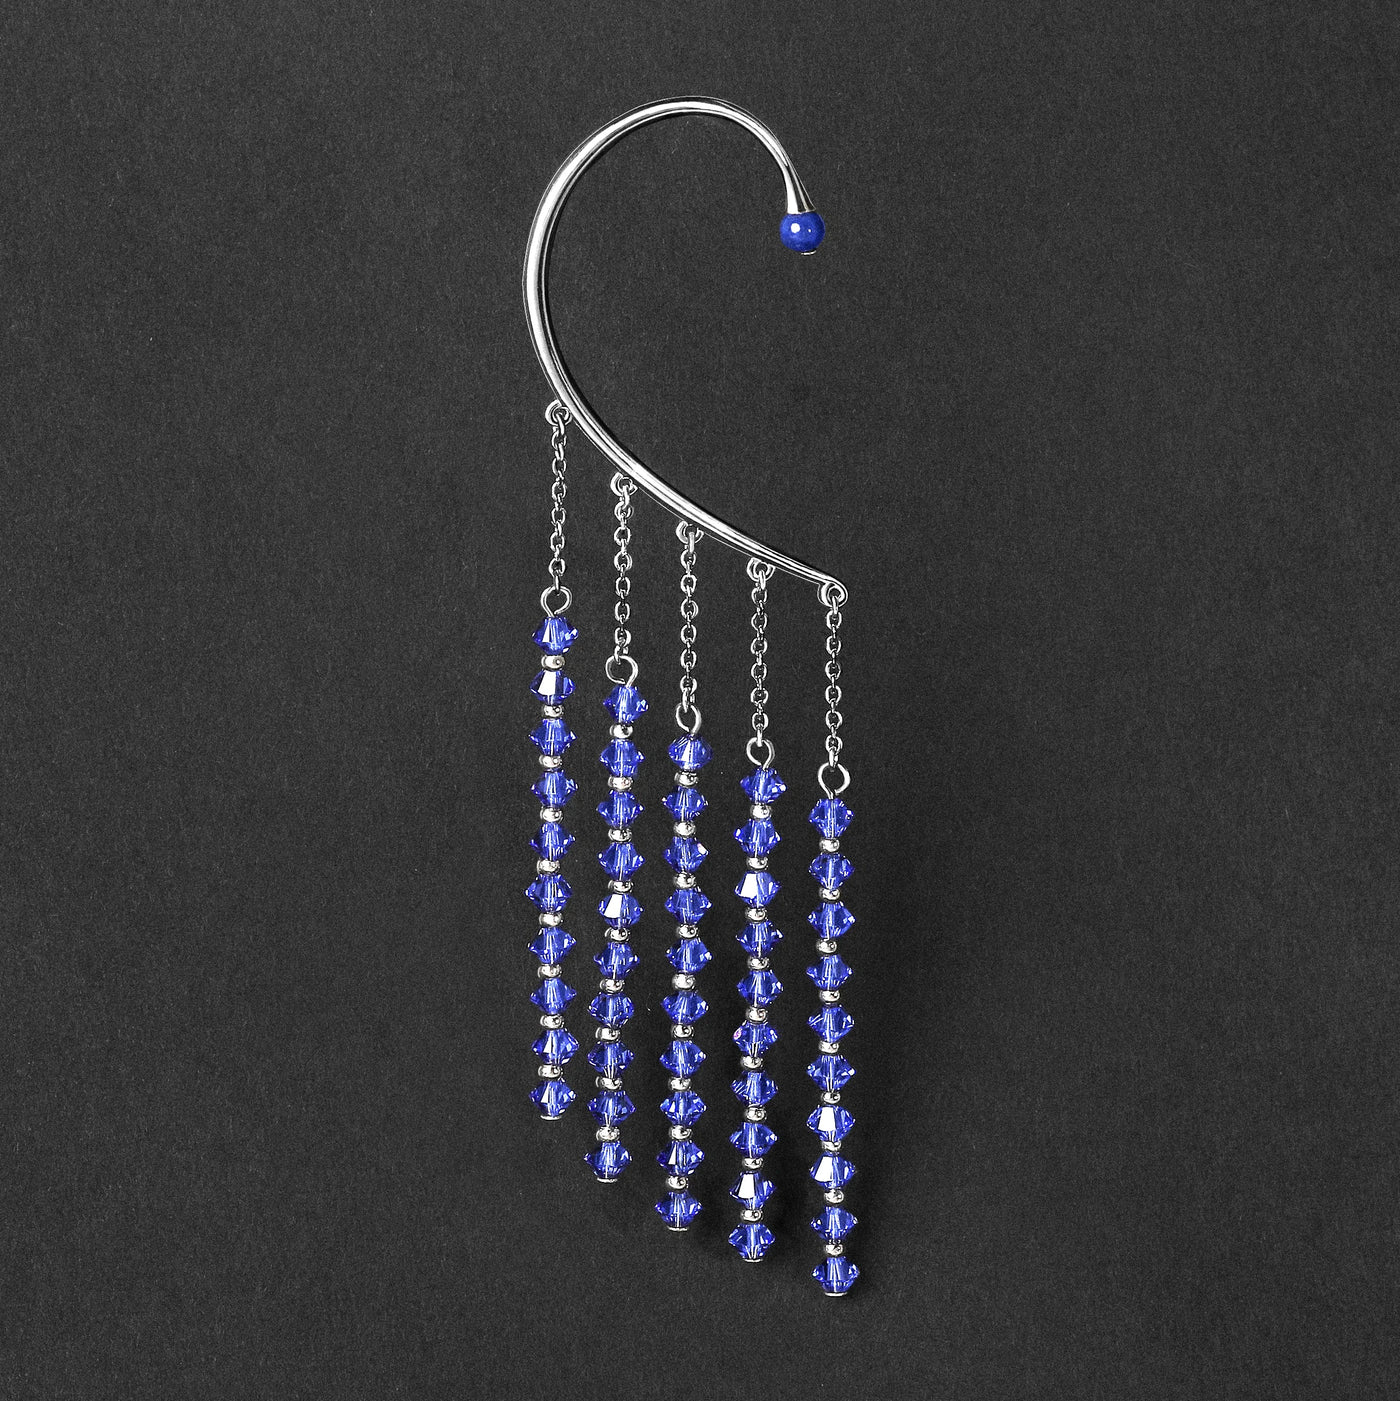 Orparima Tour d'oreille "Blue Diamond" Collection Swarovski produit seul fond noir. Tour d'oreille doré au Palladium